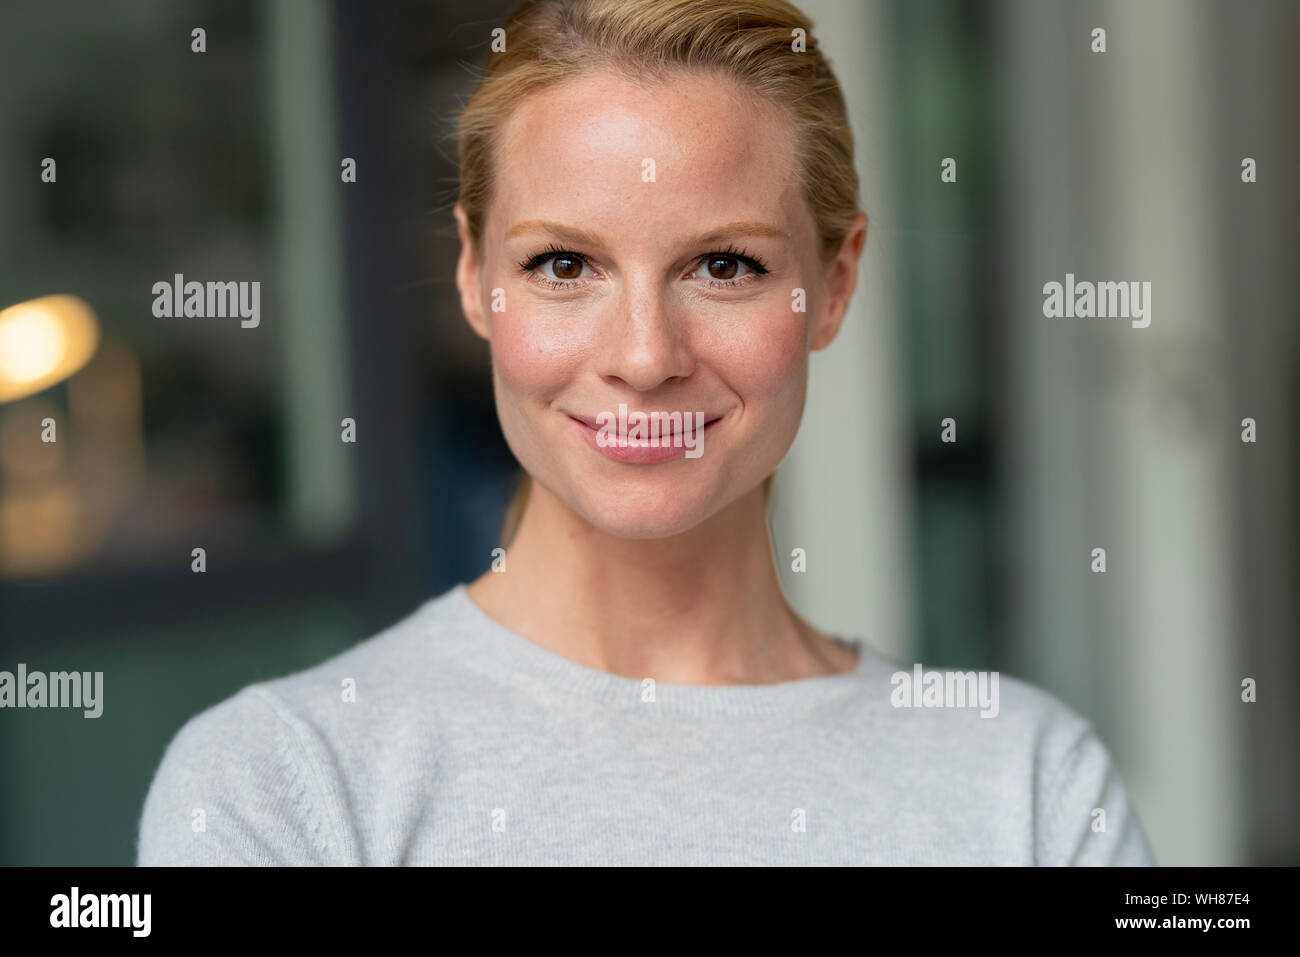 Retrato de mujer sonriente Foto de stock